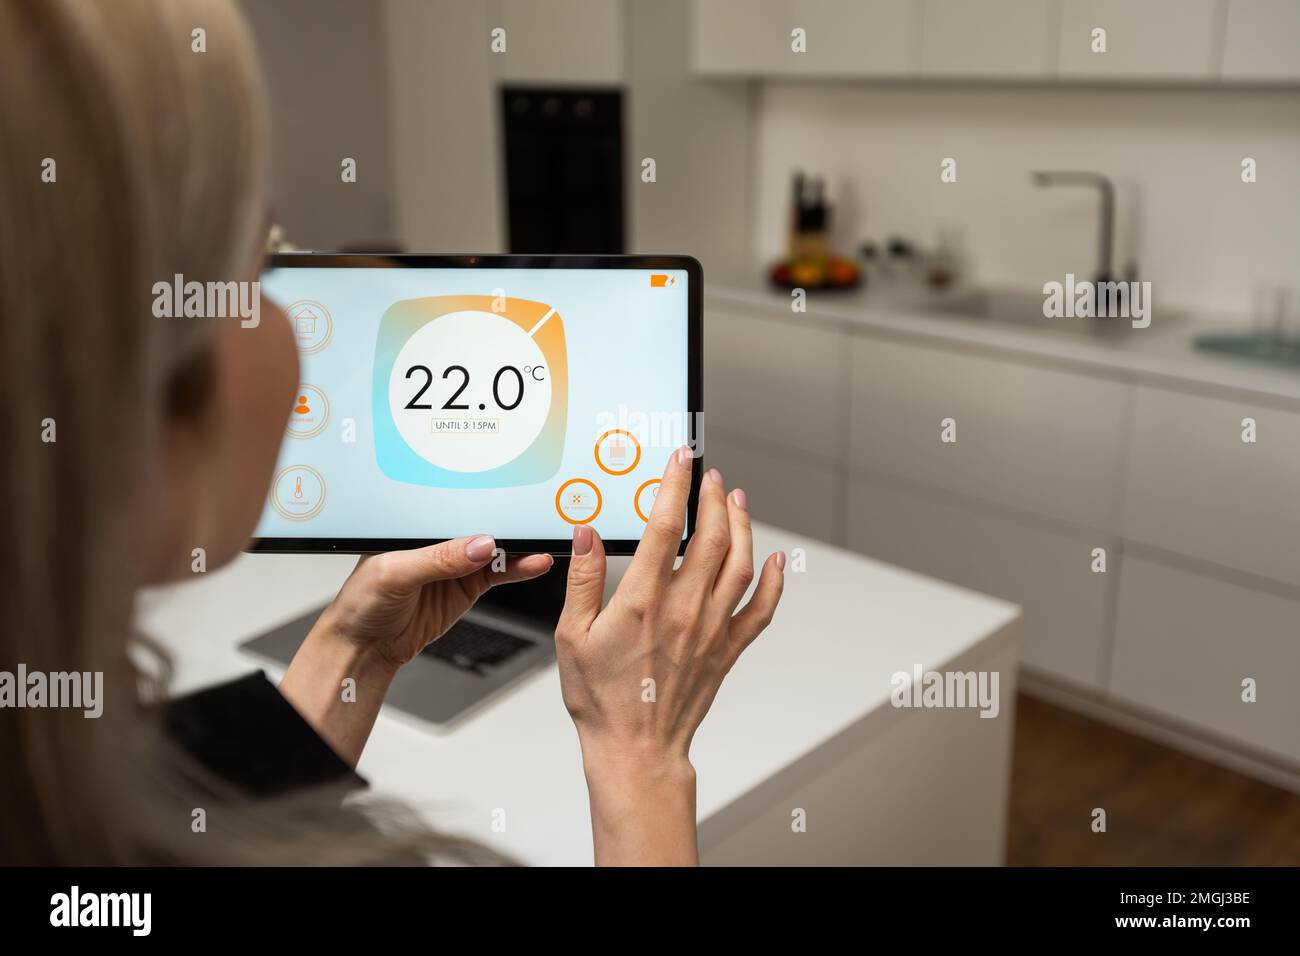 Femme appuyant sur le bouton de l'application cuisine de la maison intelligente sur une tablette numérique à la maison.Concept de contrôle à domicile moderne.Idée de style de vie domestique.Image rognée Banque D'Images